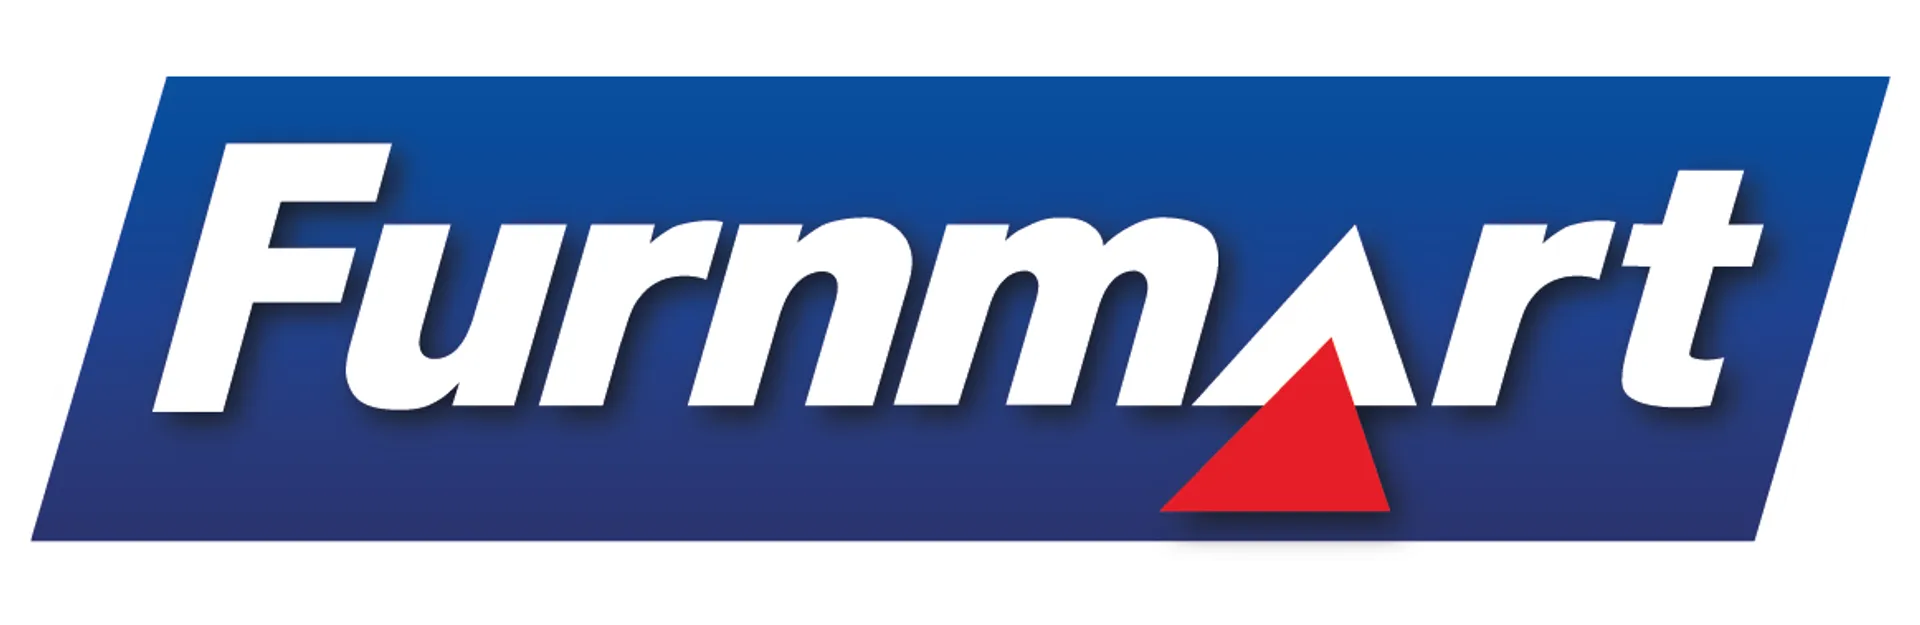 FURNMART logo